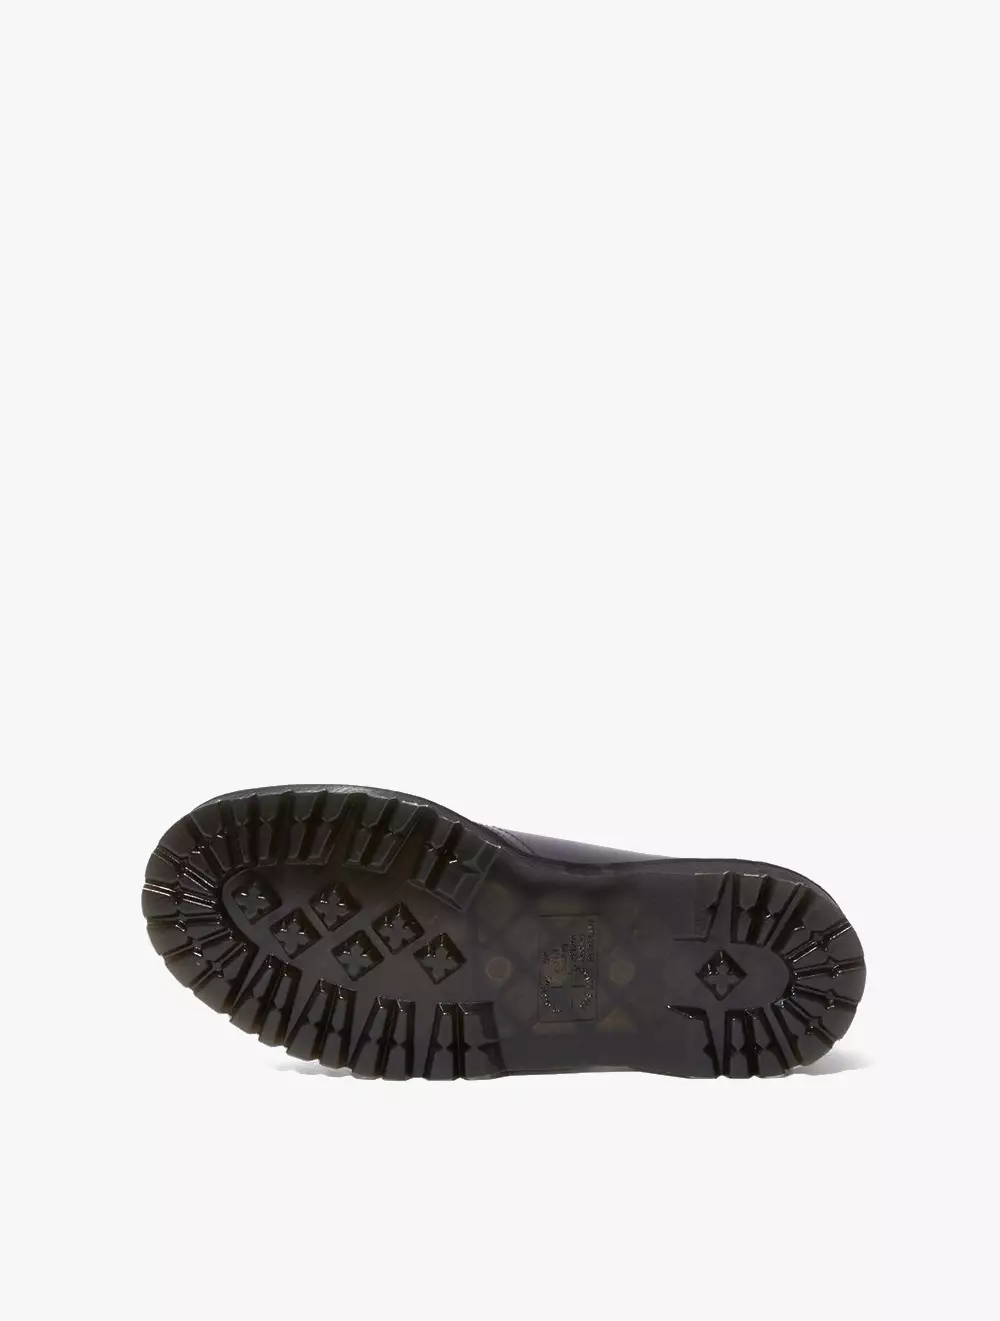 Jual Dr. Martens 1461 Bex 3 I Women'S Shoes - Black Smooth Original ...